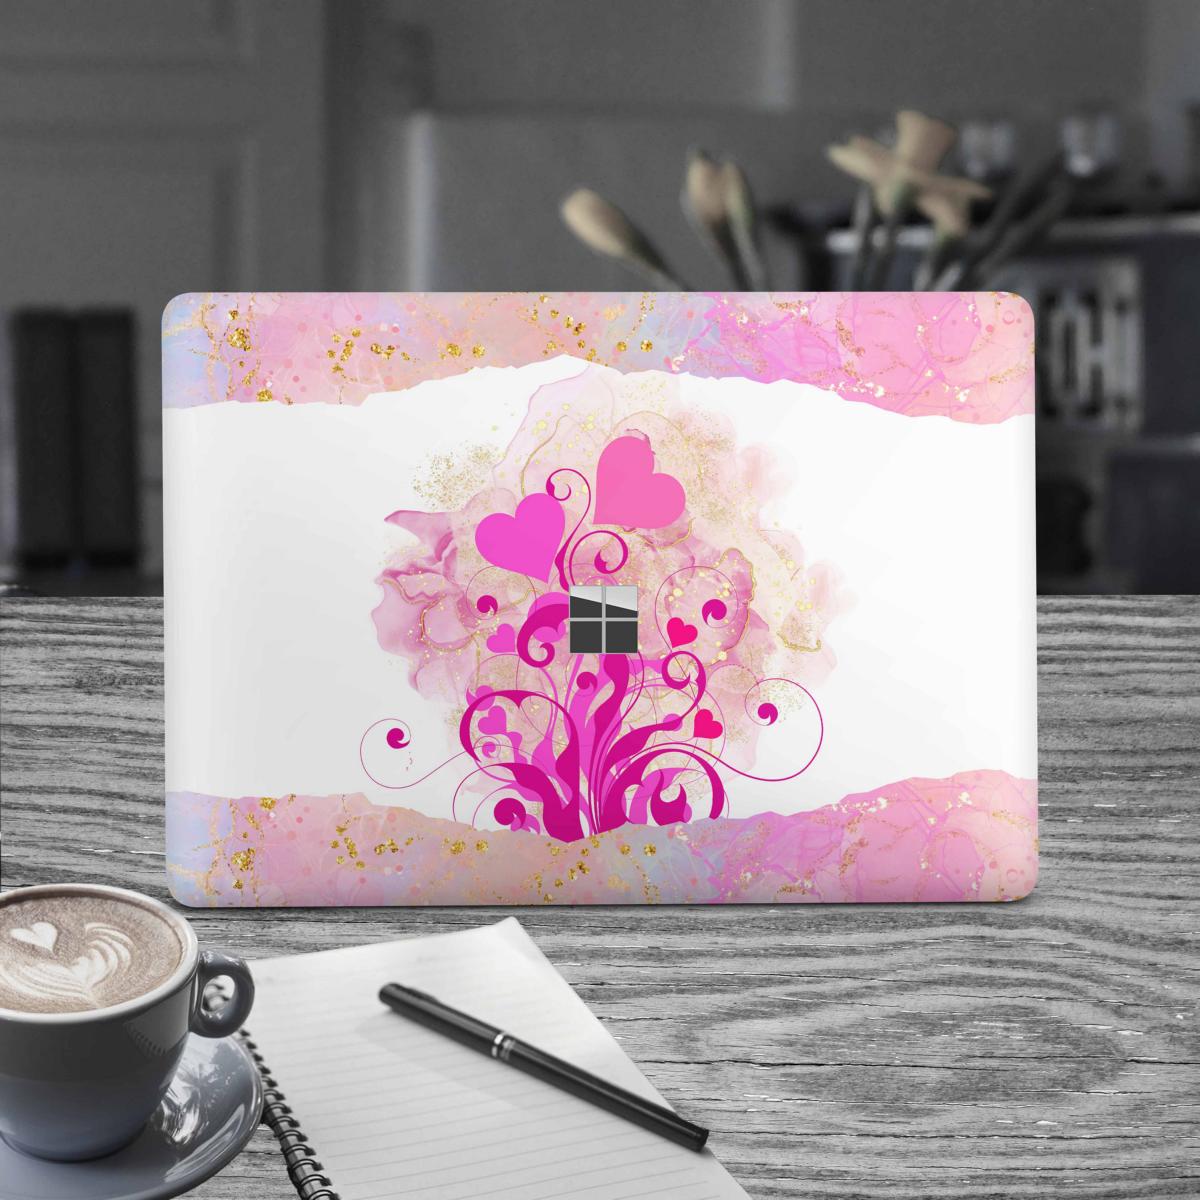 Microsoft Surface Book 2 Skin 15" Premium Vinylfolie Kratzerschutz Design Boarder Hearts Elektronik-Sticker & -Aufkleber Skins4u   